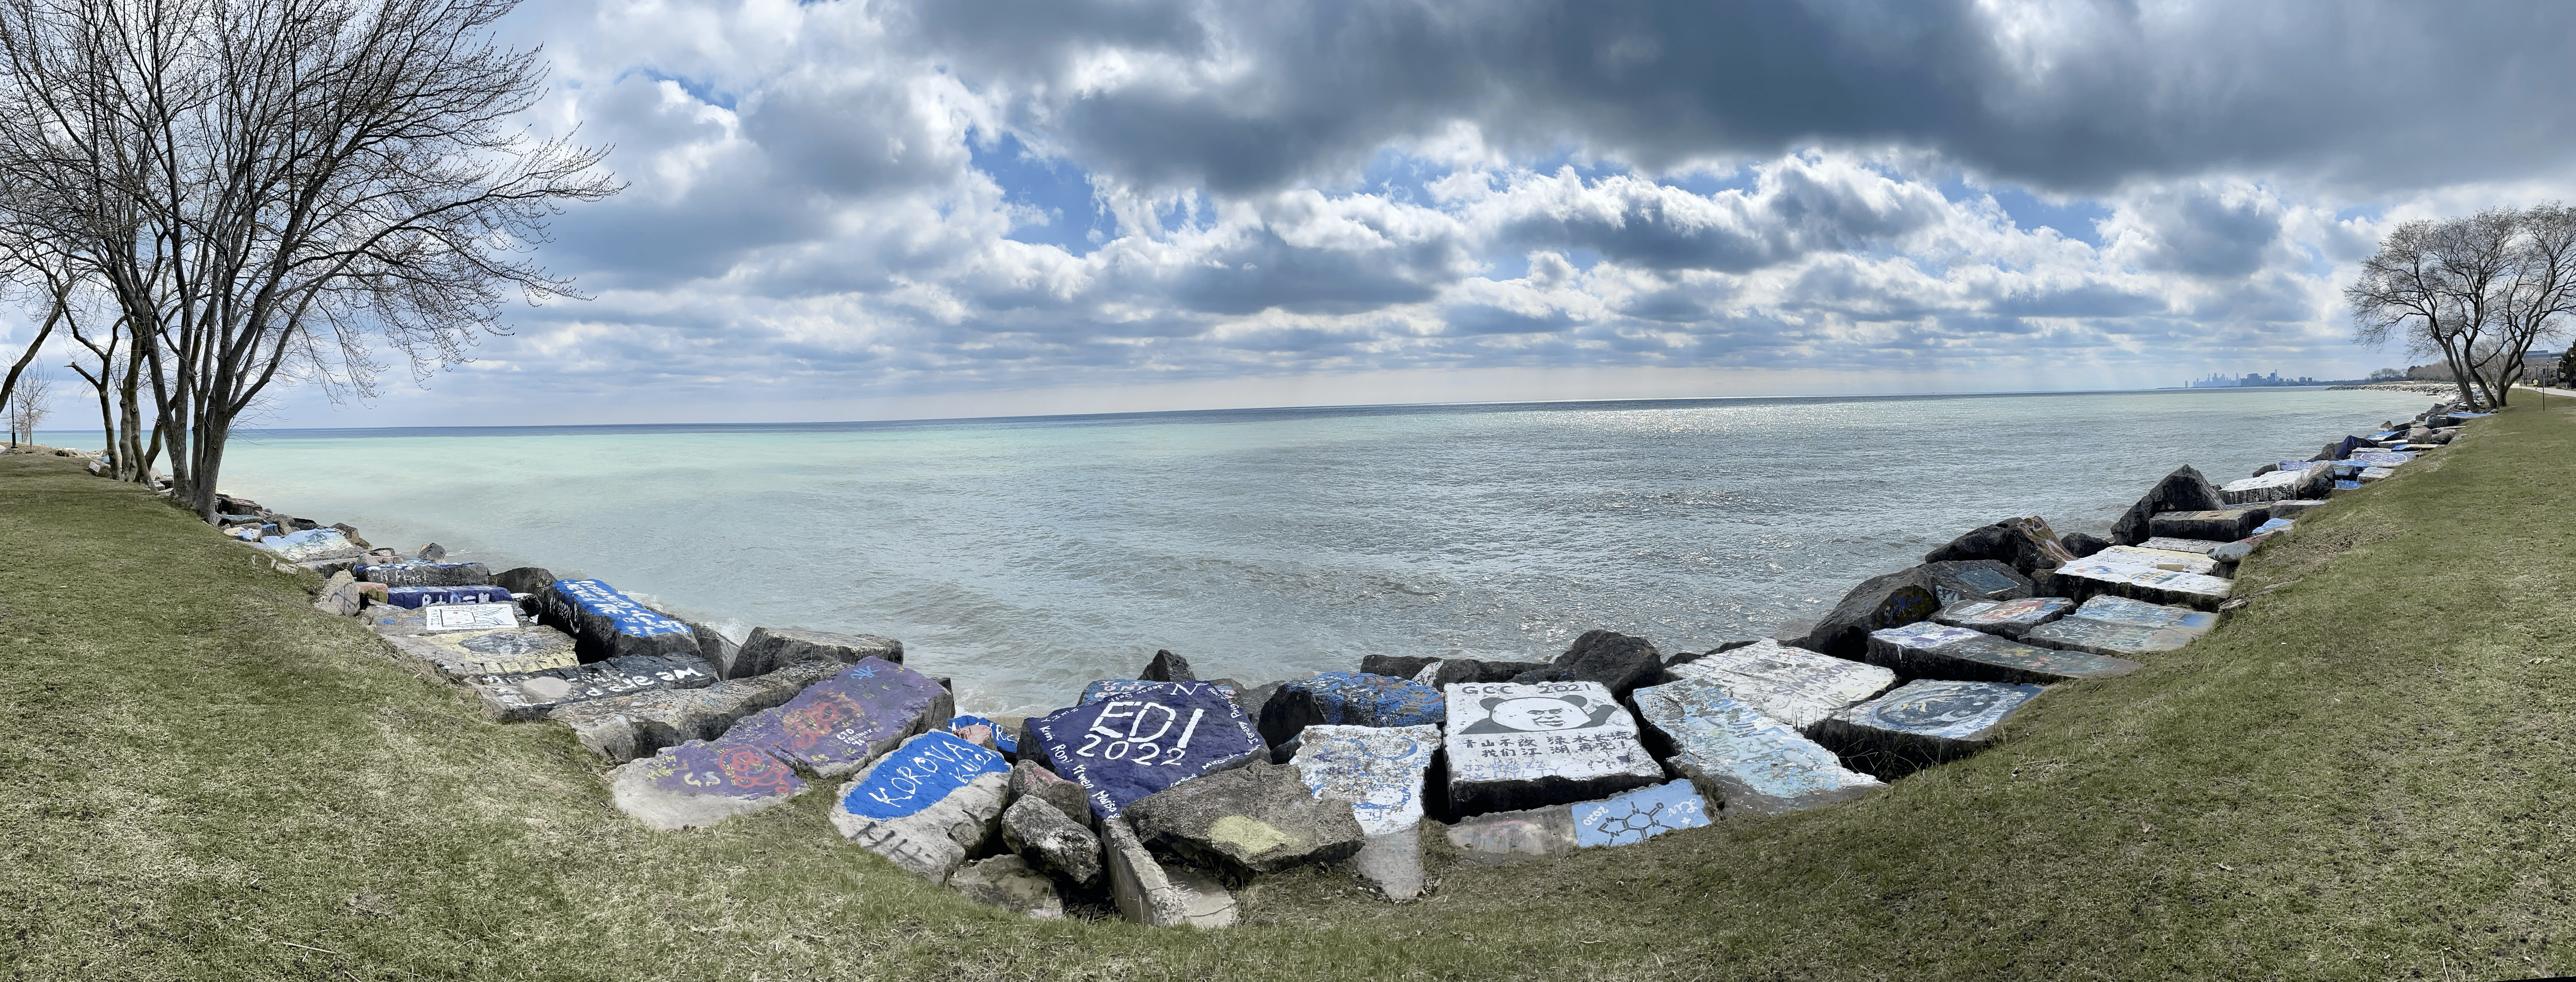 Rocks at the Lakefill along Lake Michigan